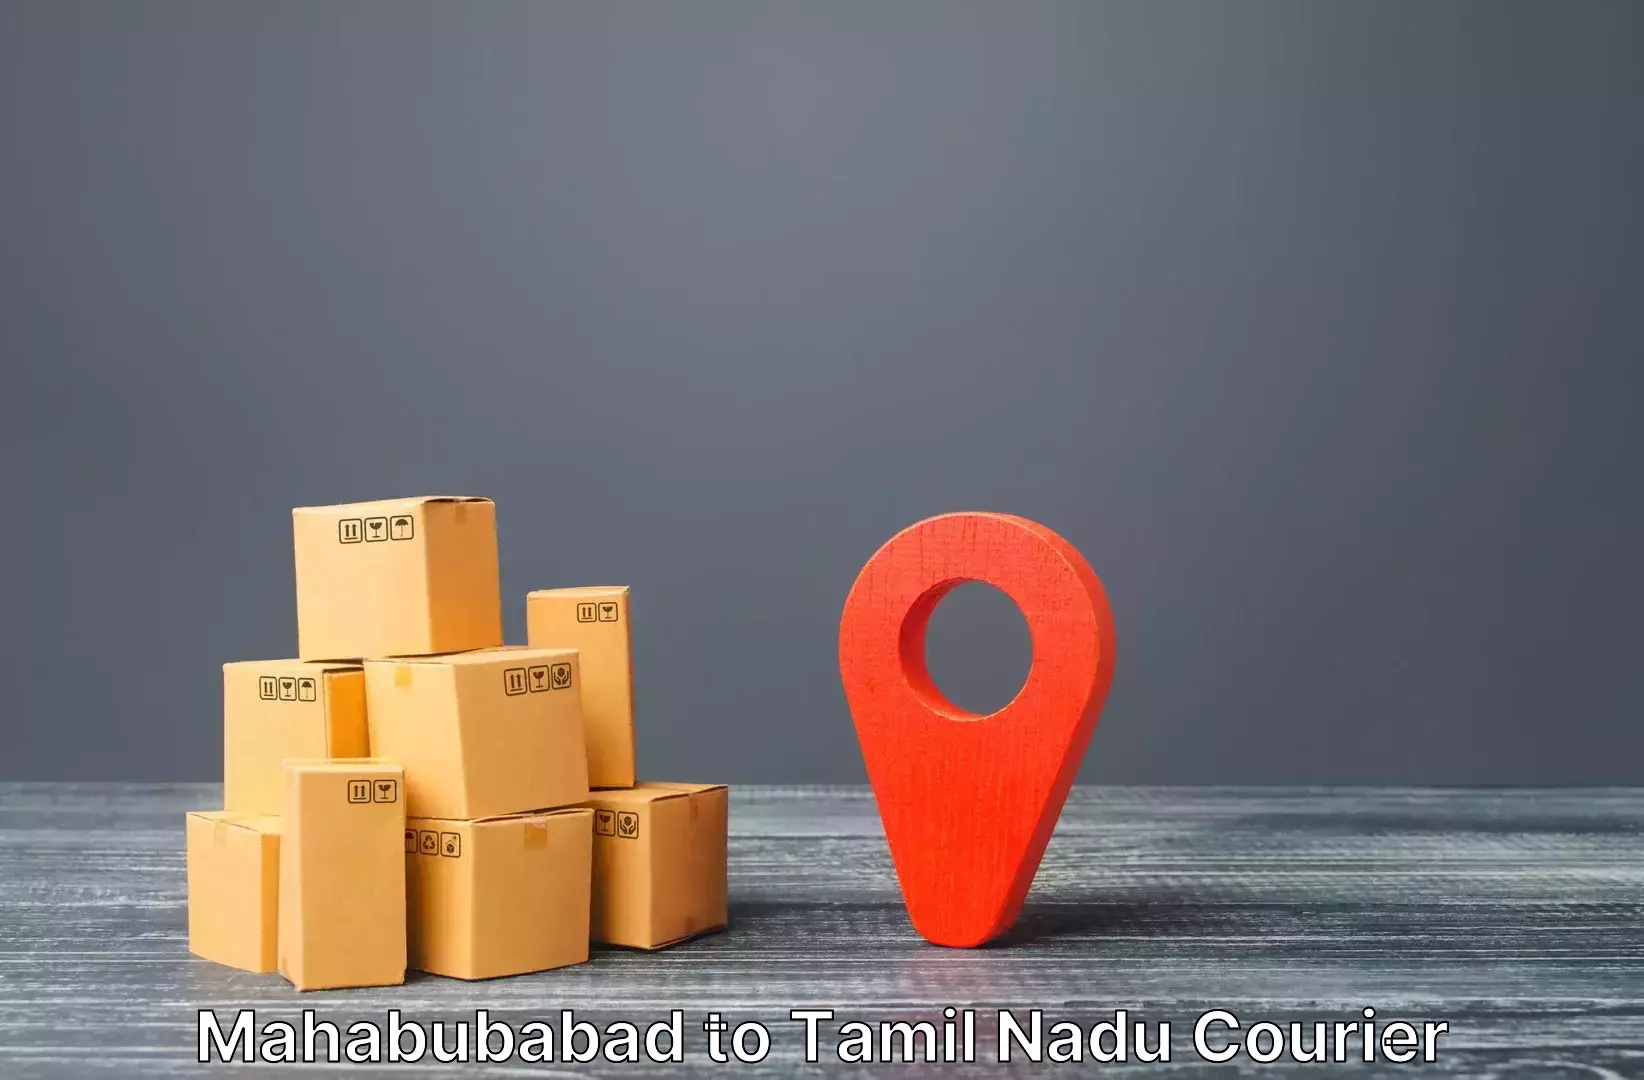 Express baggage shipping Mahabubabad to Tamil Nadu